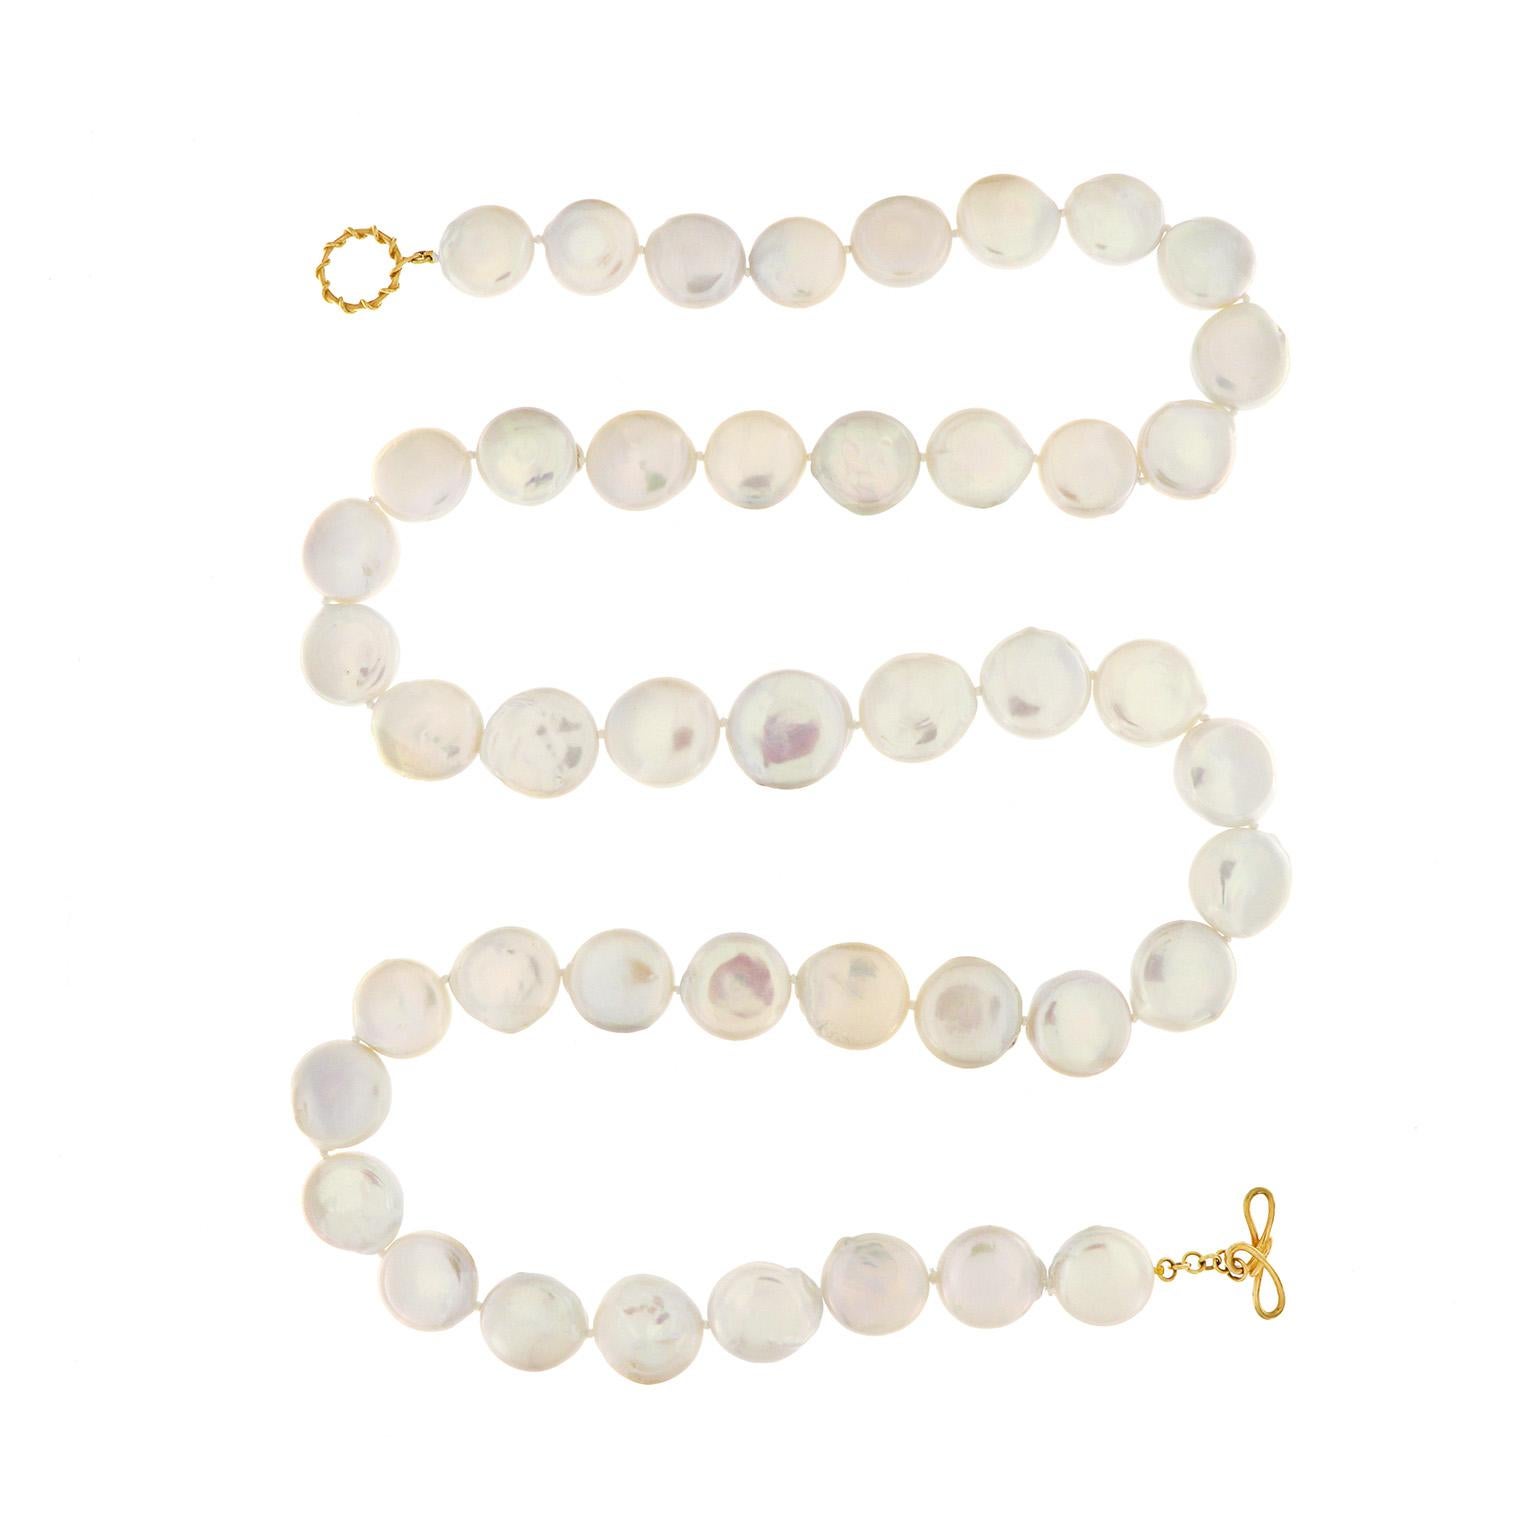 Sanfte Iris-Töne zeigen die Schönheit der Süßwasserperlen in dieser Halskette. Die in Münzen geschnitzten Perlen reflektieren zarte Farben, wenn das Licht auf sie fällt. Das Gesamtgewicht der runden 20-mm-Perlen beträgt 45 Karat. Ein 18k Gelbgold